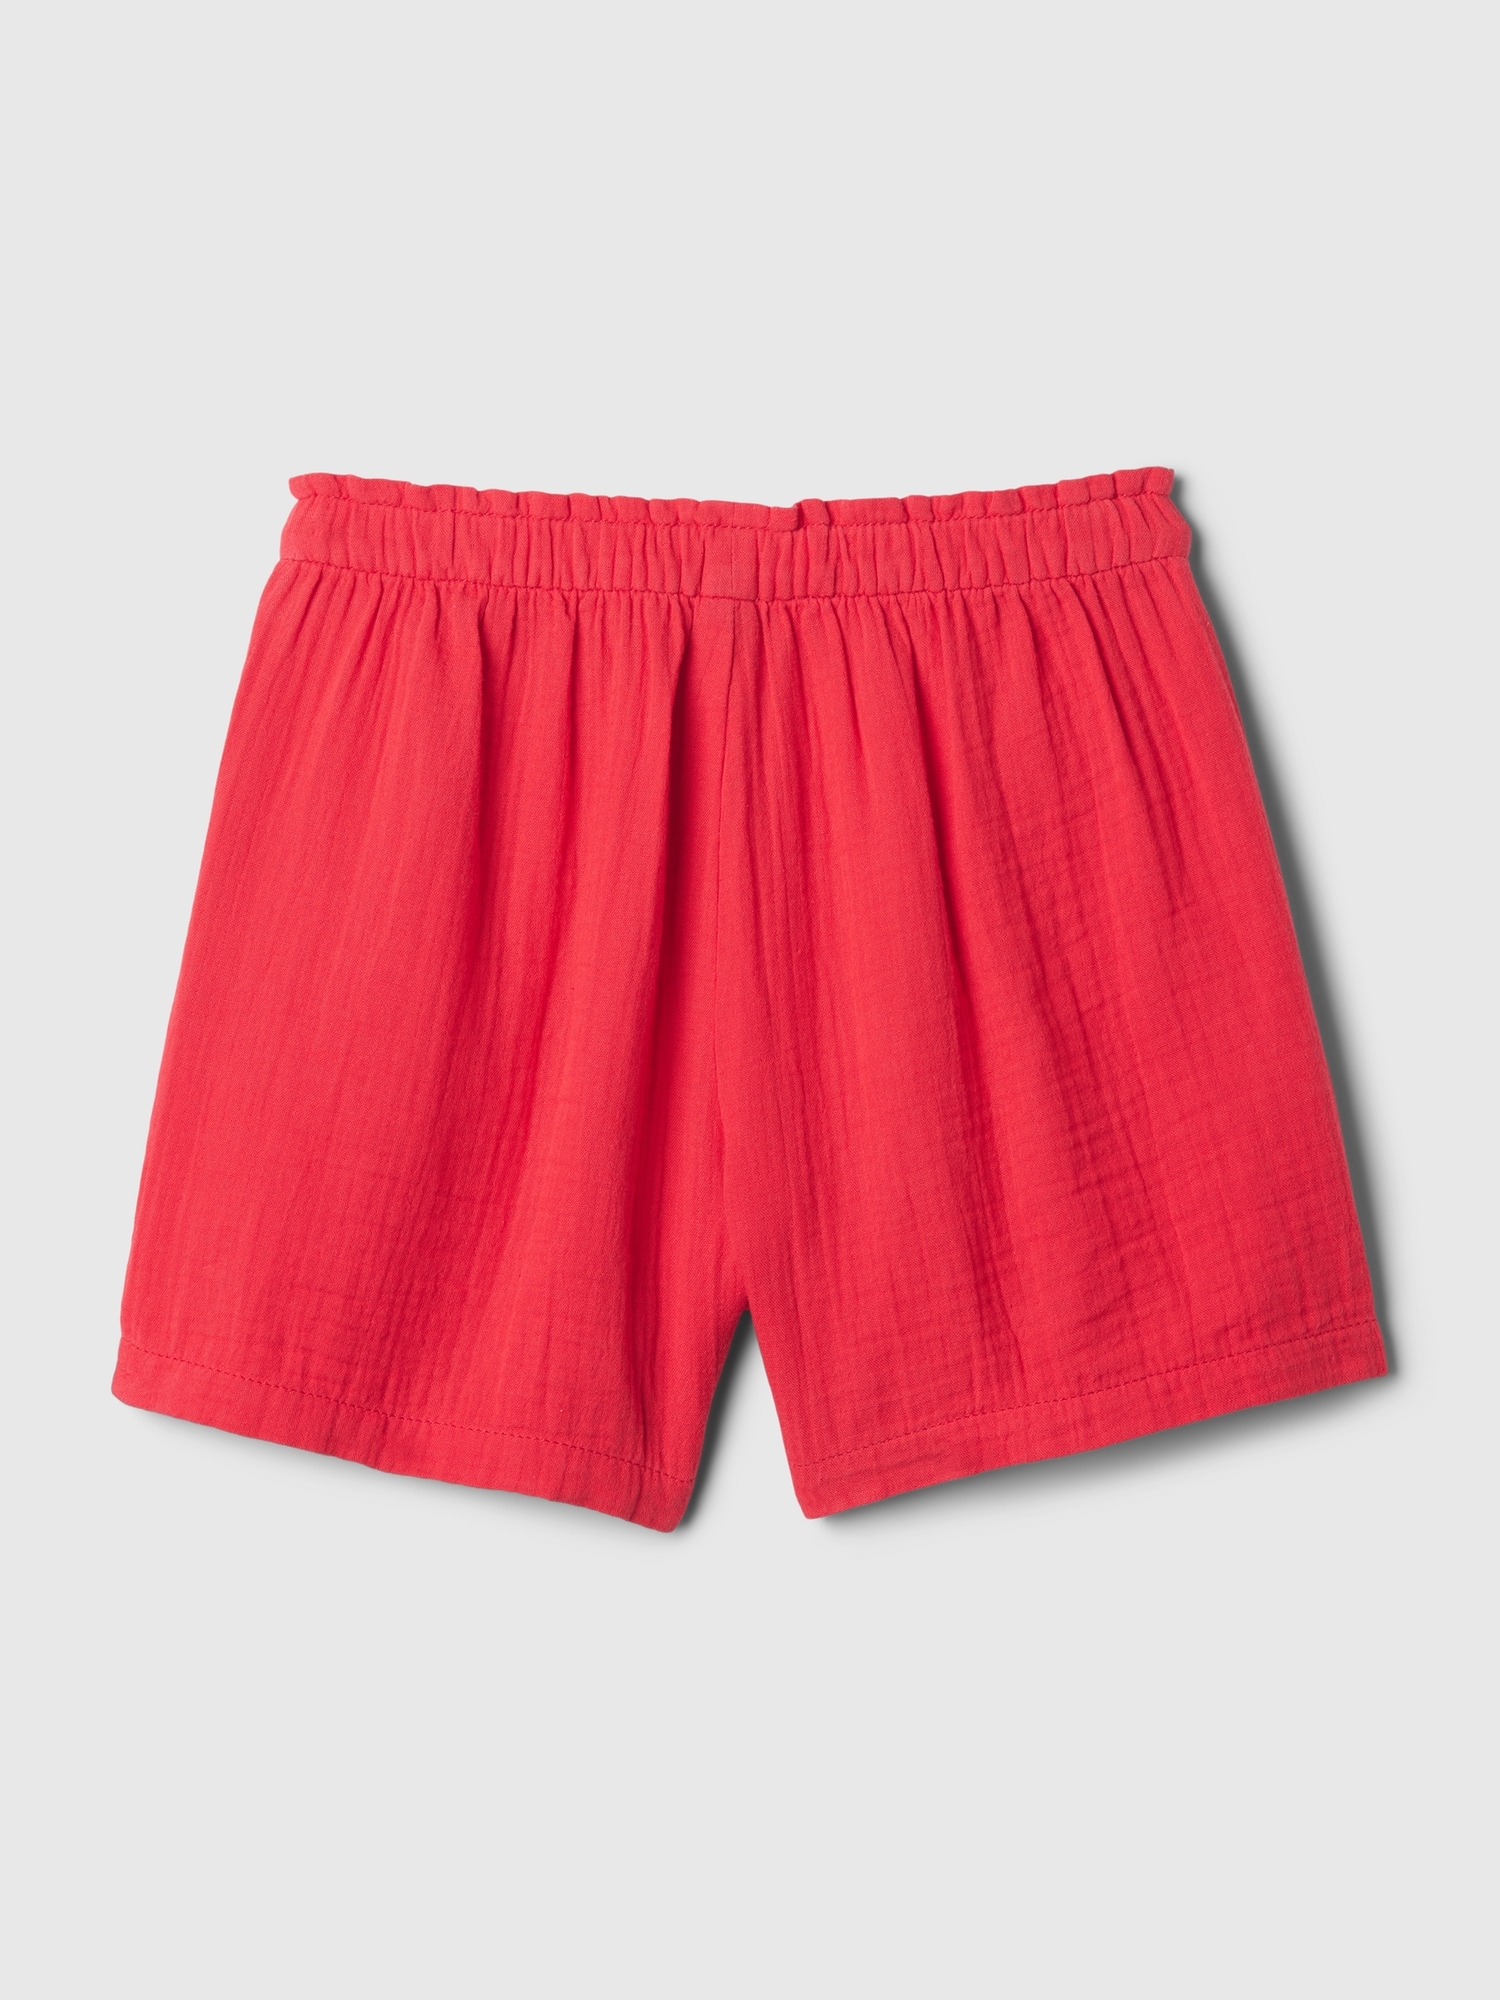 Kids Crinkle Gauze Shorts | Gap